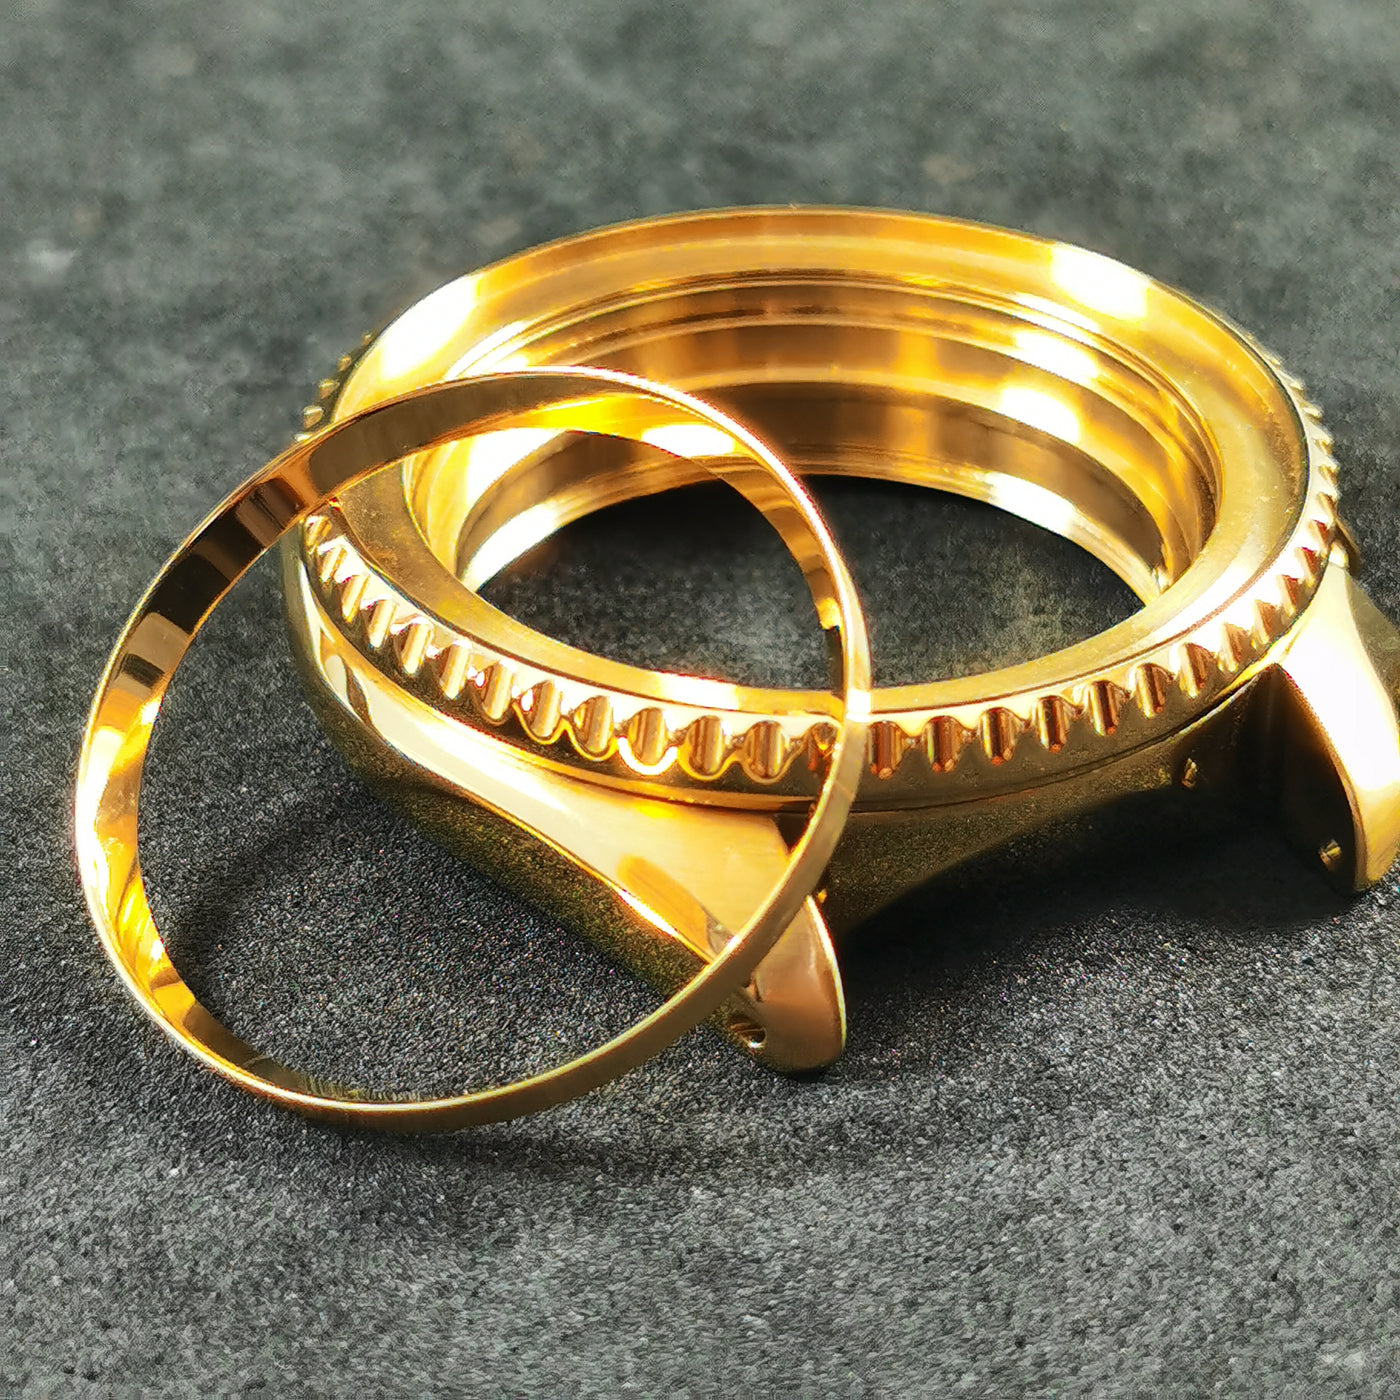 C0190 SKX007/SRPD Chapter Ring - Polished Gold